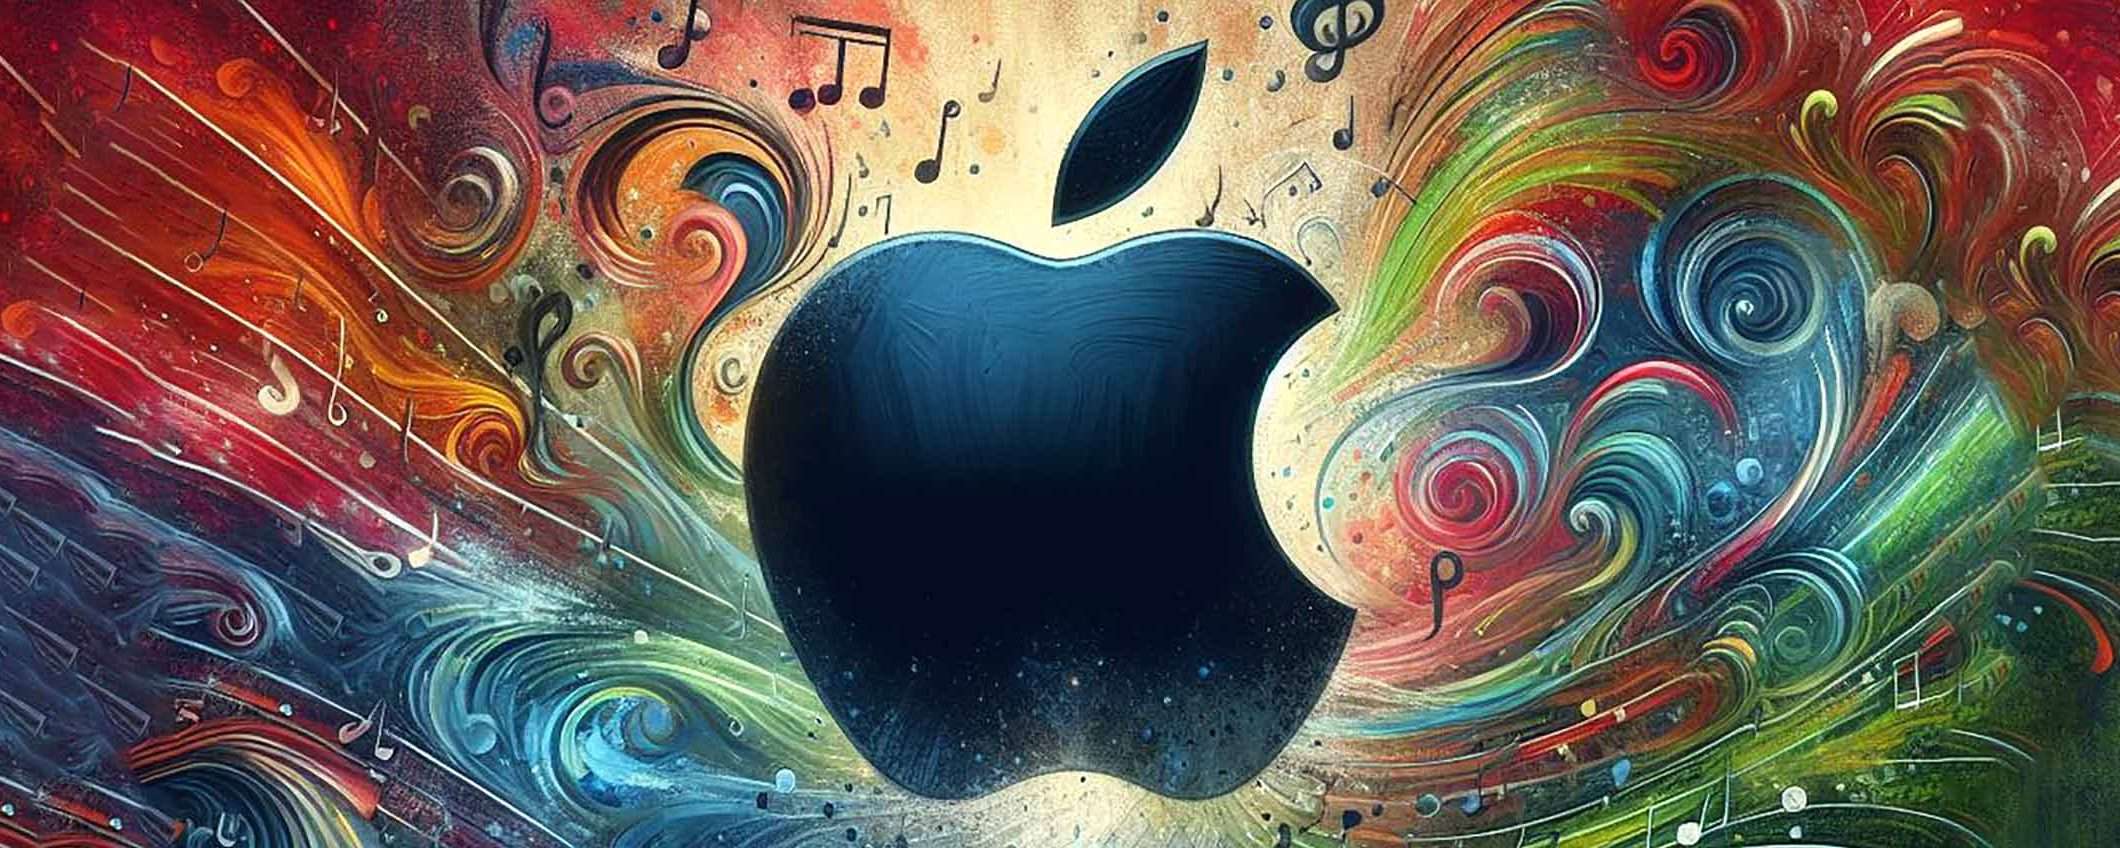 Scopri come ottenere 6 mesi di Apple Music gratis (offerta)